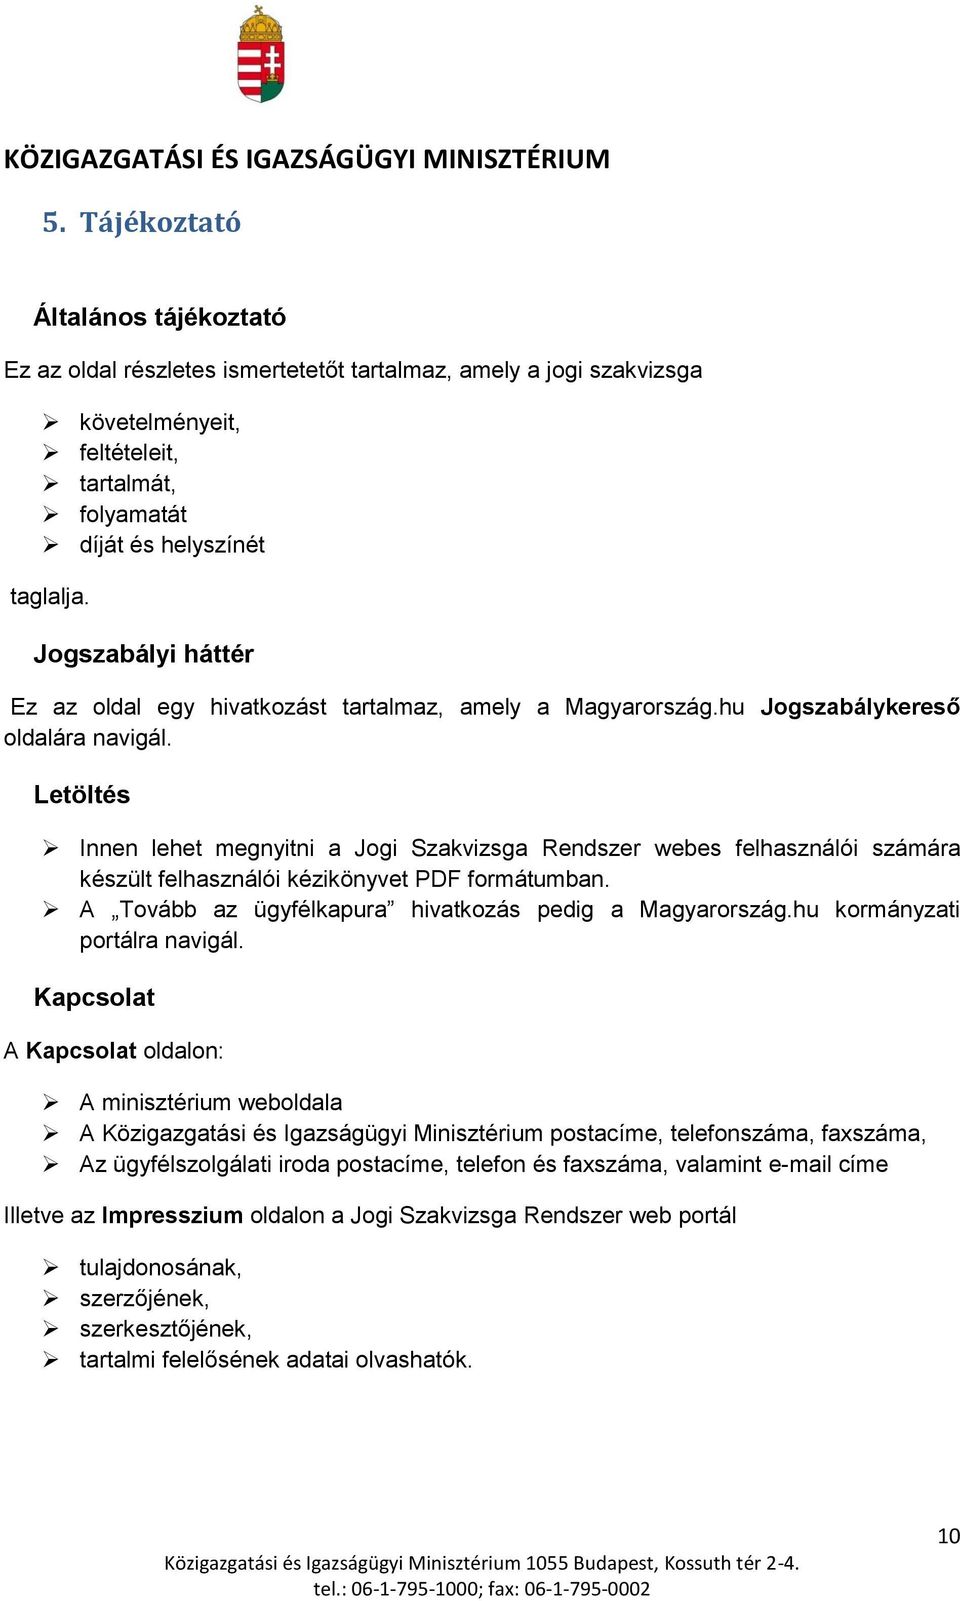 Letöltés Innen lehet megnyitni a Jogi Szakvizsga Rendszer webes felhasználói számára készült felhasználói kézikönyvet PDF formátumban. A Tovább az ügyfélkapura hivatkozás pedig a Magyarország.